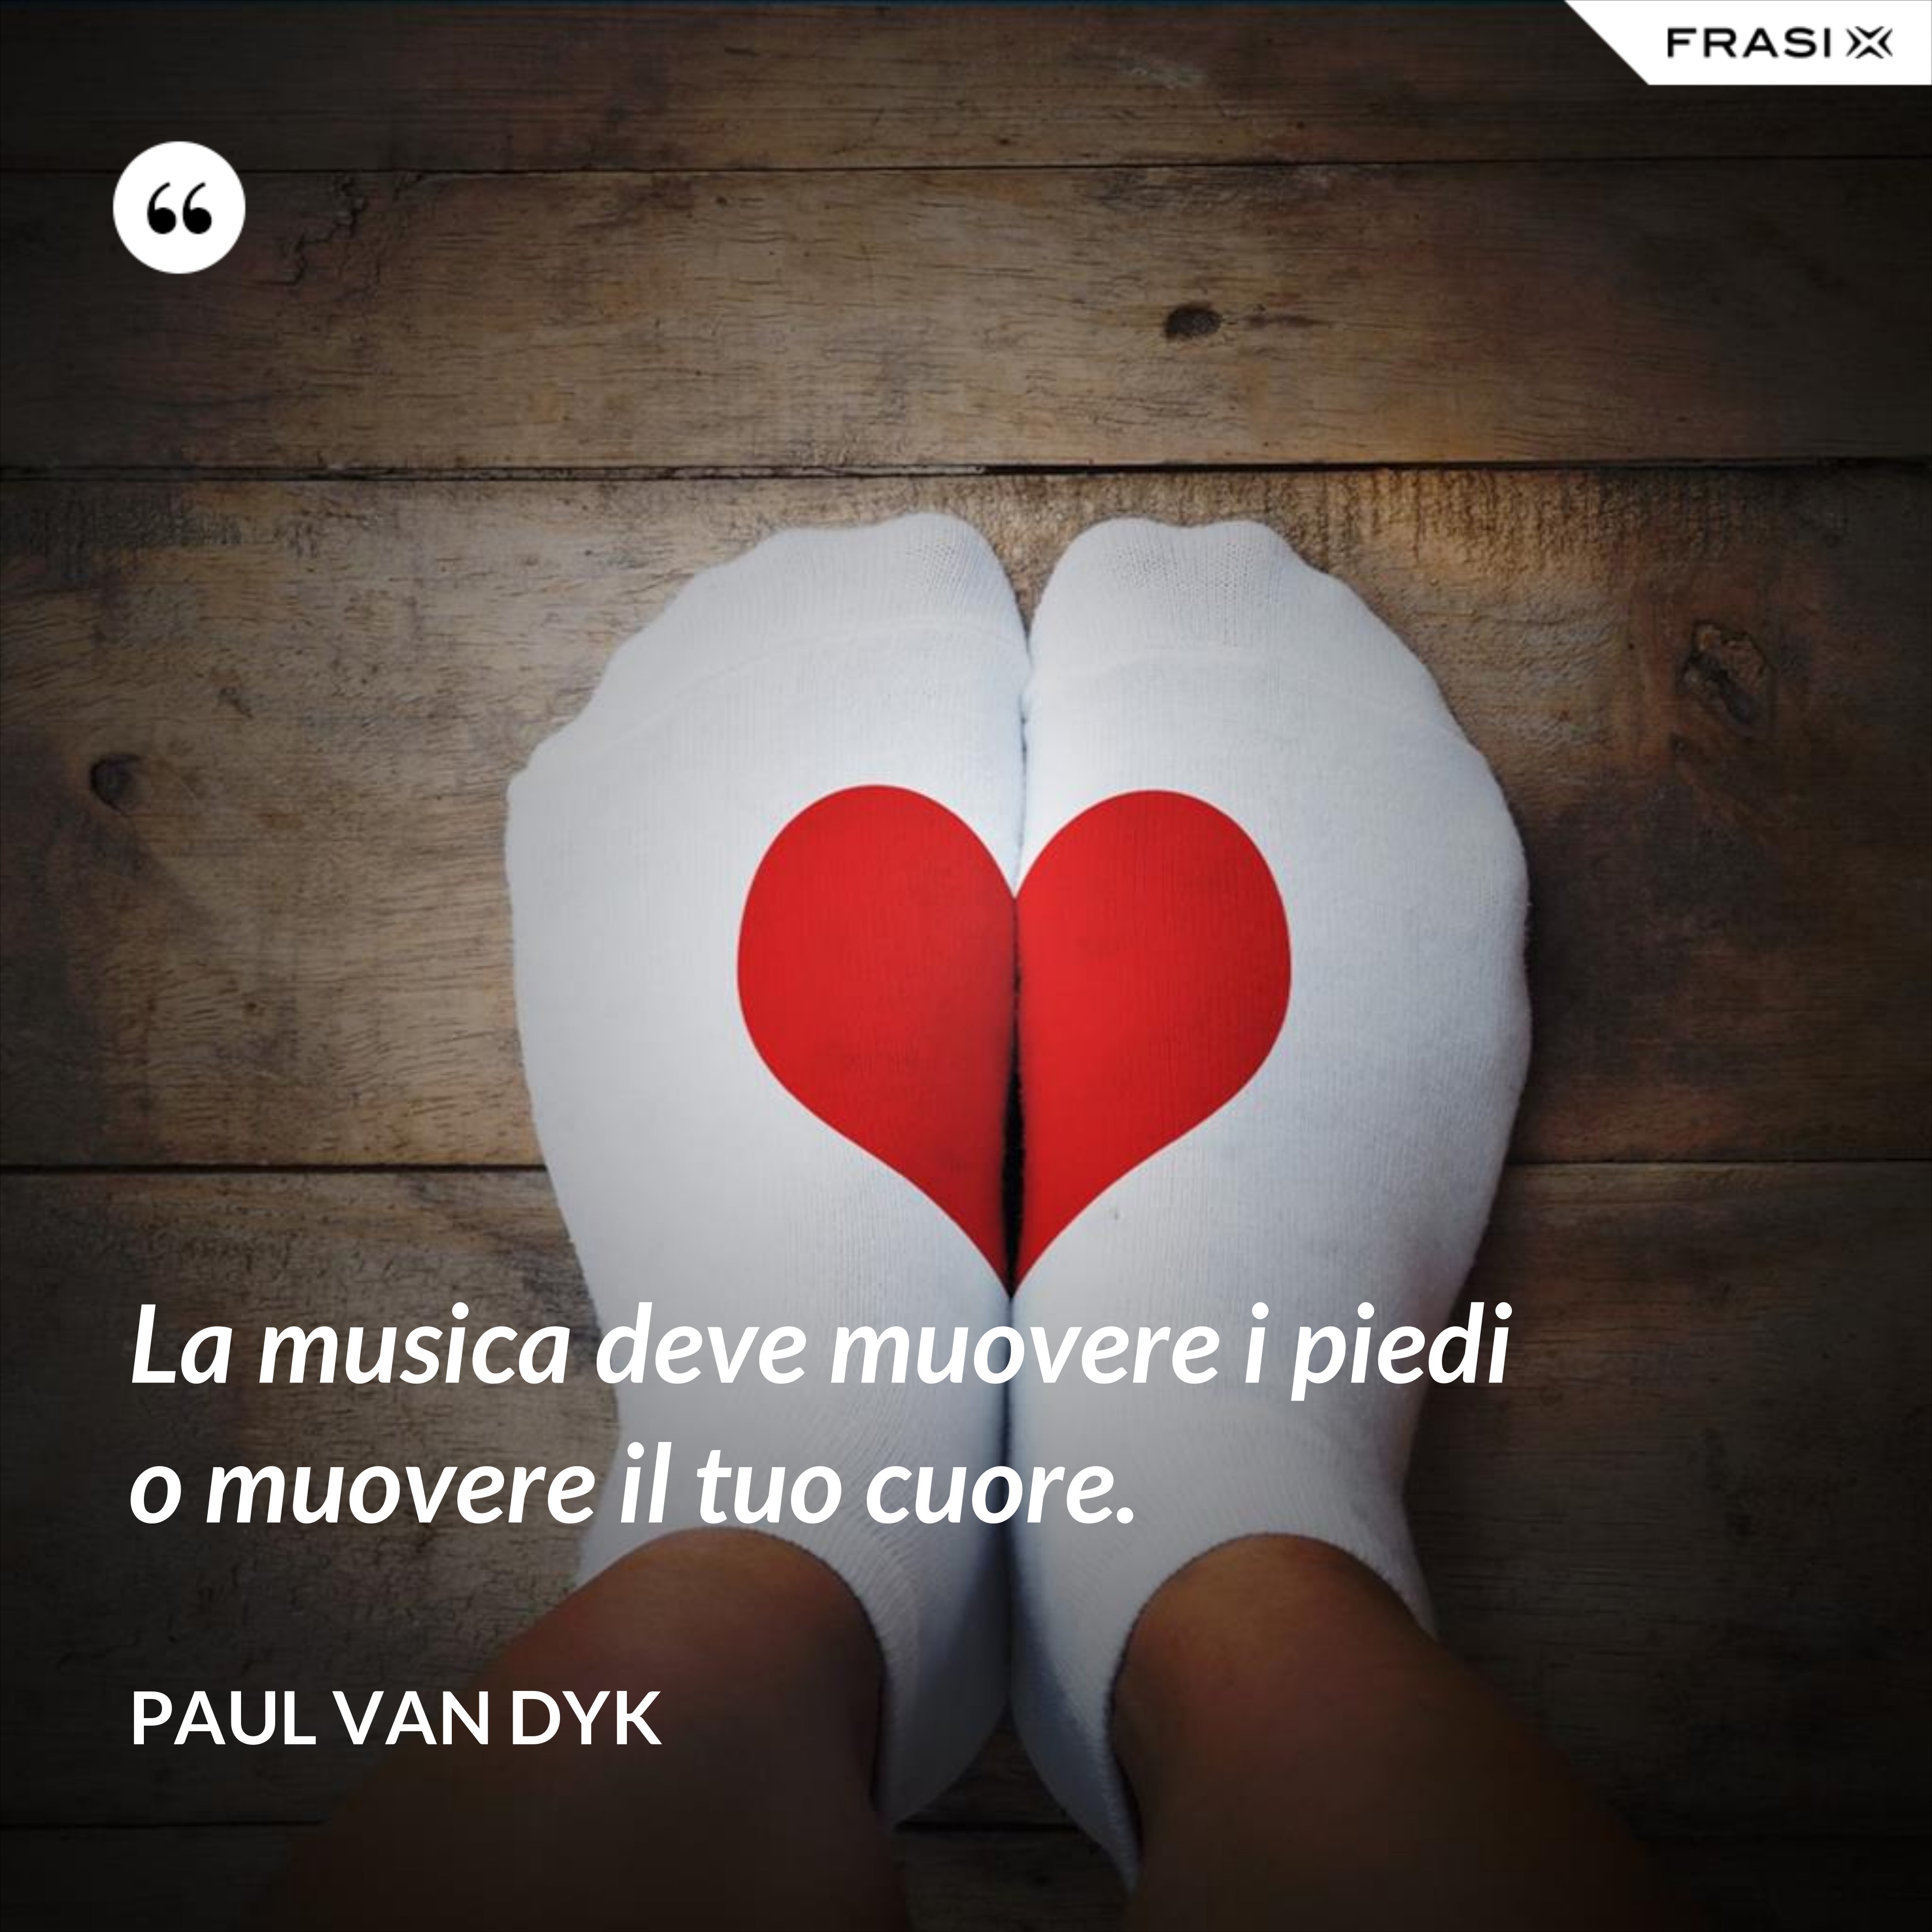 La musica deve muovere i piedi o muovere il tuo cuore. - Paul van Dyk